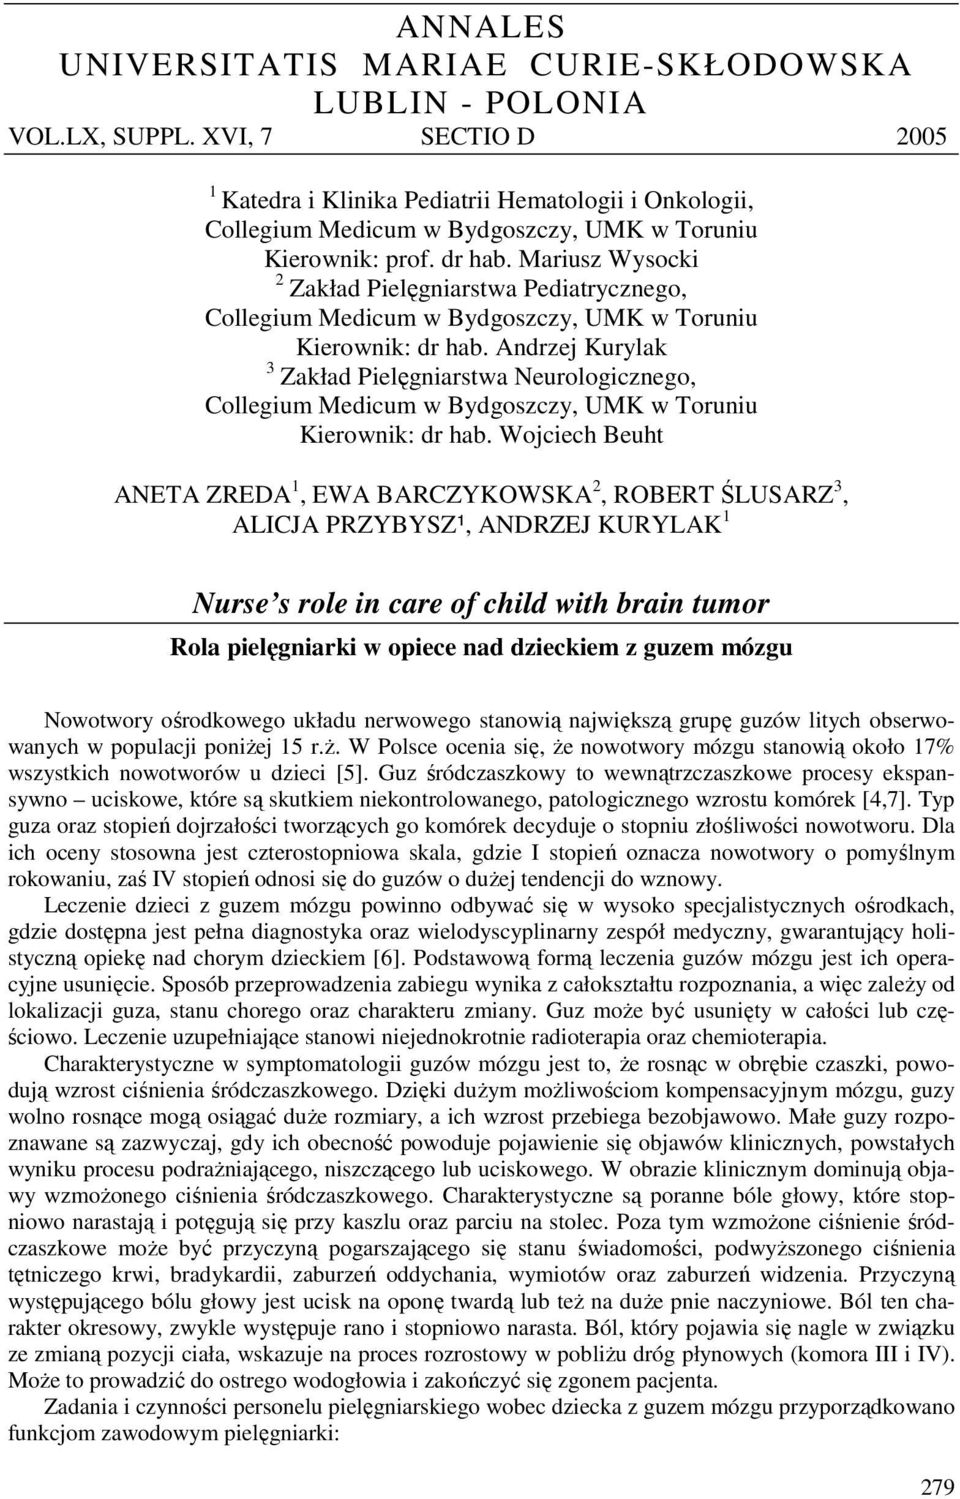 Mariusz Wyscki 2 Zakład Pielęgniarstwa Pediatryczneg, Cllegium Medicum w Bydgszczy, UMK w Truniu Kierwnik: dr hab.